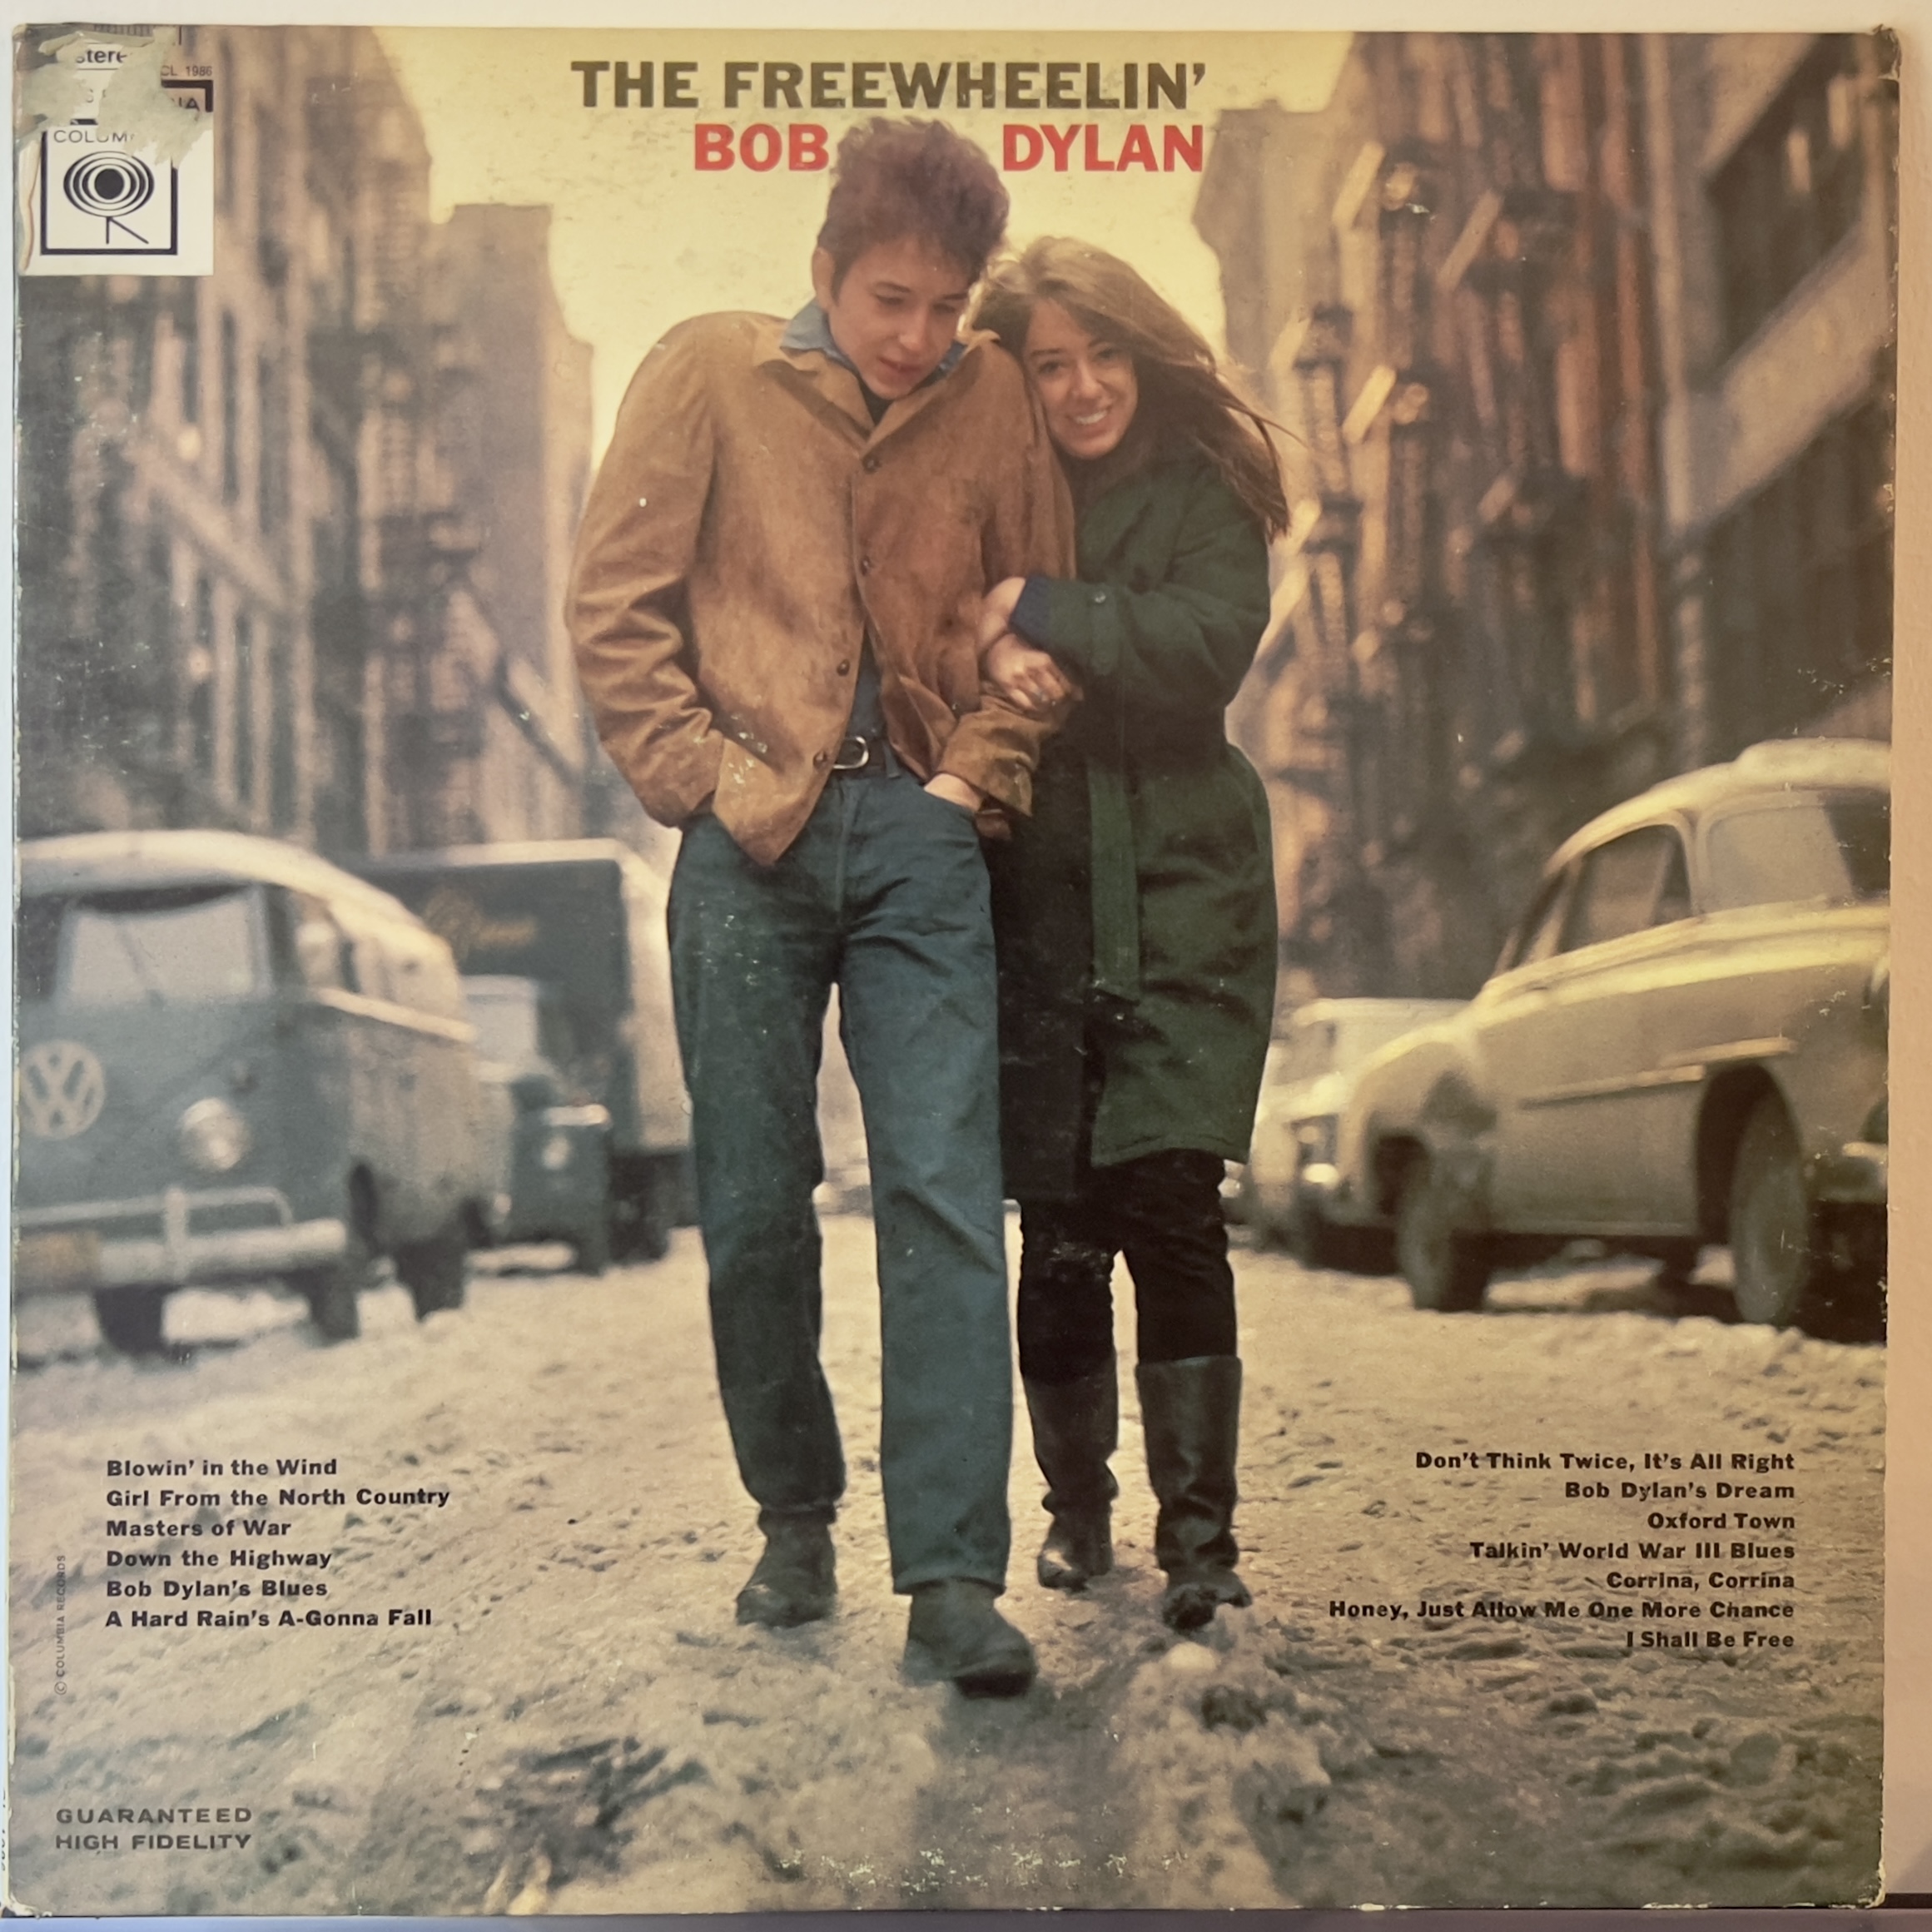 The Freewheelin' by Bob Dylan